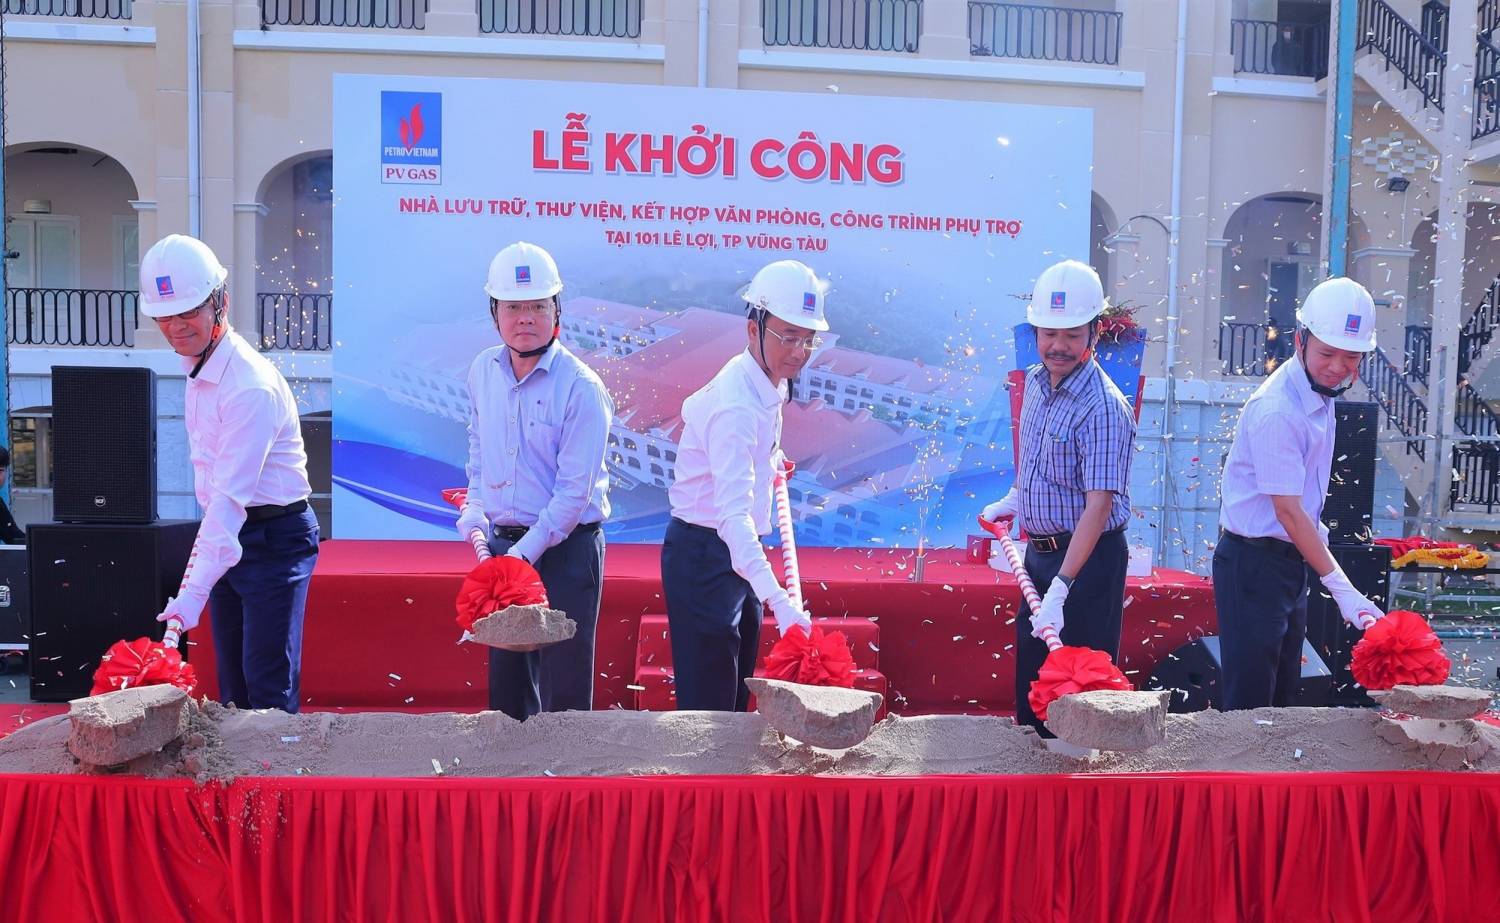 Lễ khởi công Dự án Nhà lưu trữ - Thư viện PV GAS tại 101 Lê Lợi, Vũng Tàu